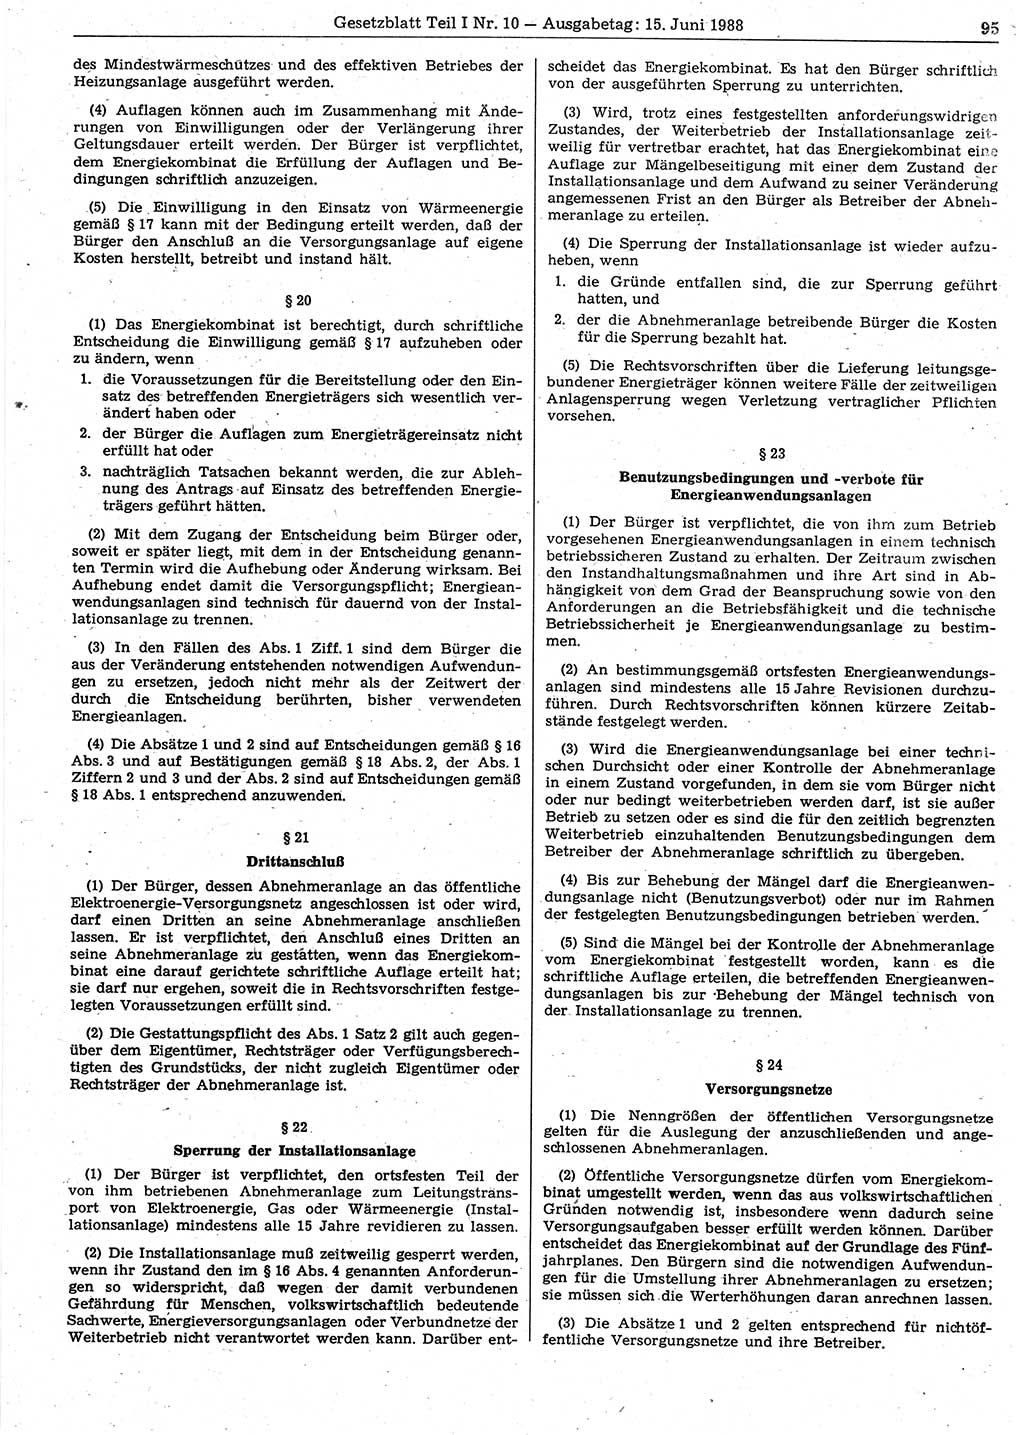 Gesetzblatt (GBl.) der Deutschen Demokratischen Republik (DDR) Teil Ⅰ 1988, Seite 95 (GBl. DDR Ⅰ 1988, S. 95)